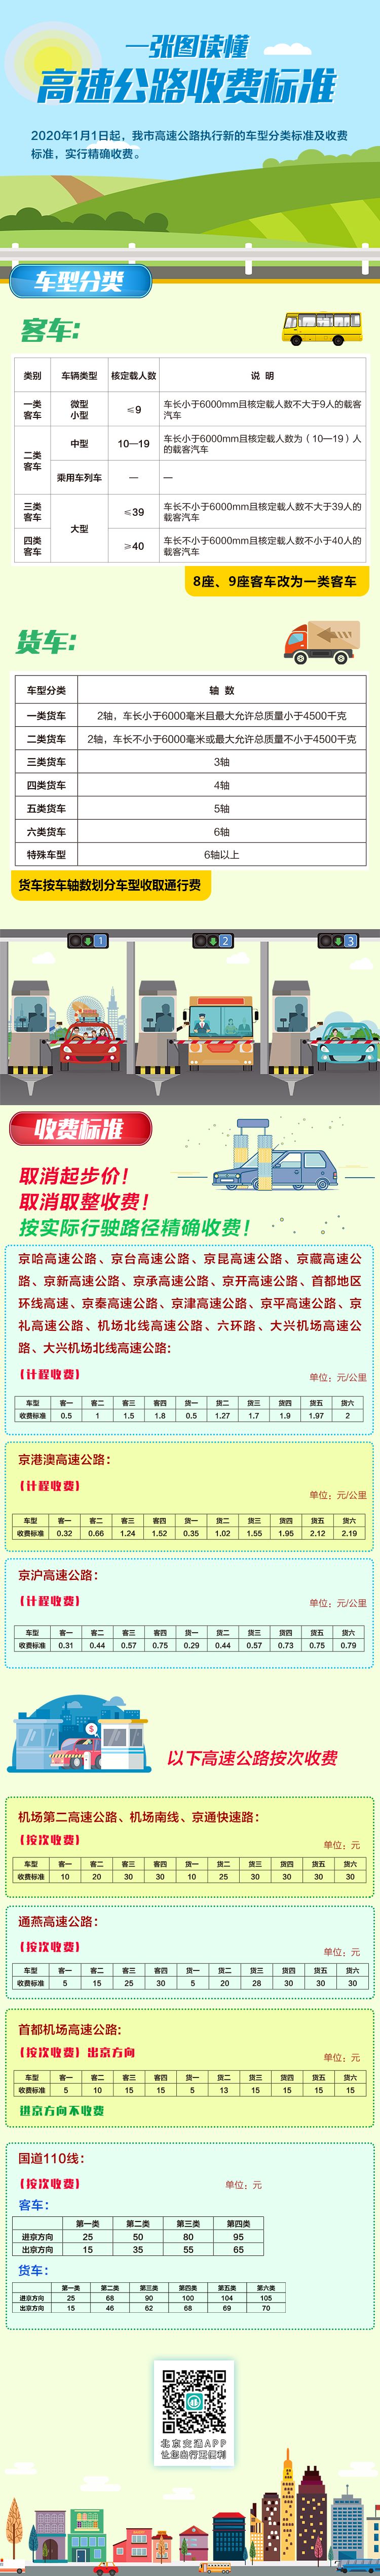 2020年1月1日北京市高速公路收费新标准(车型分类标准及收费标准)